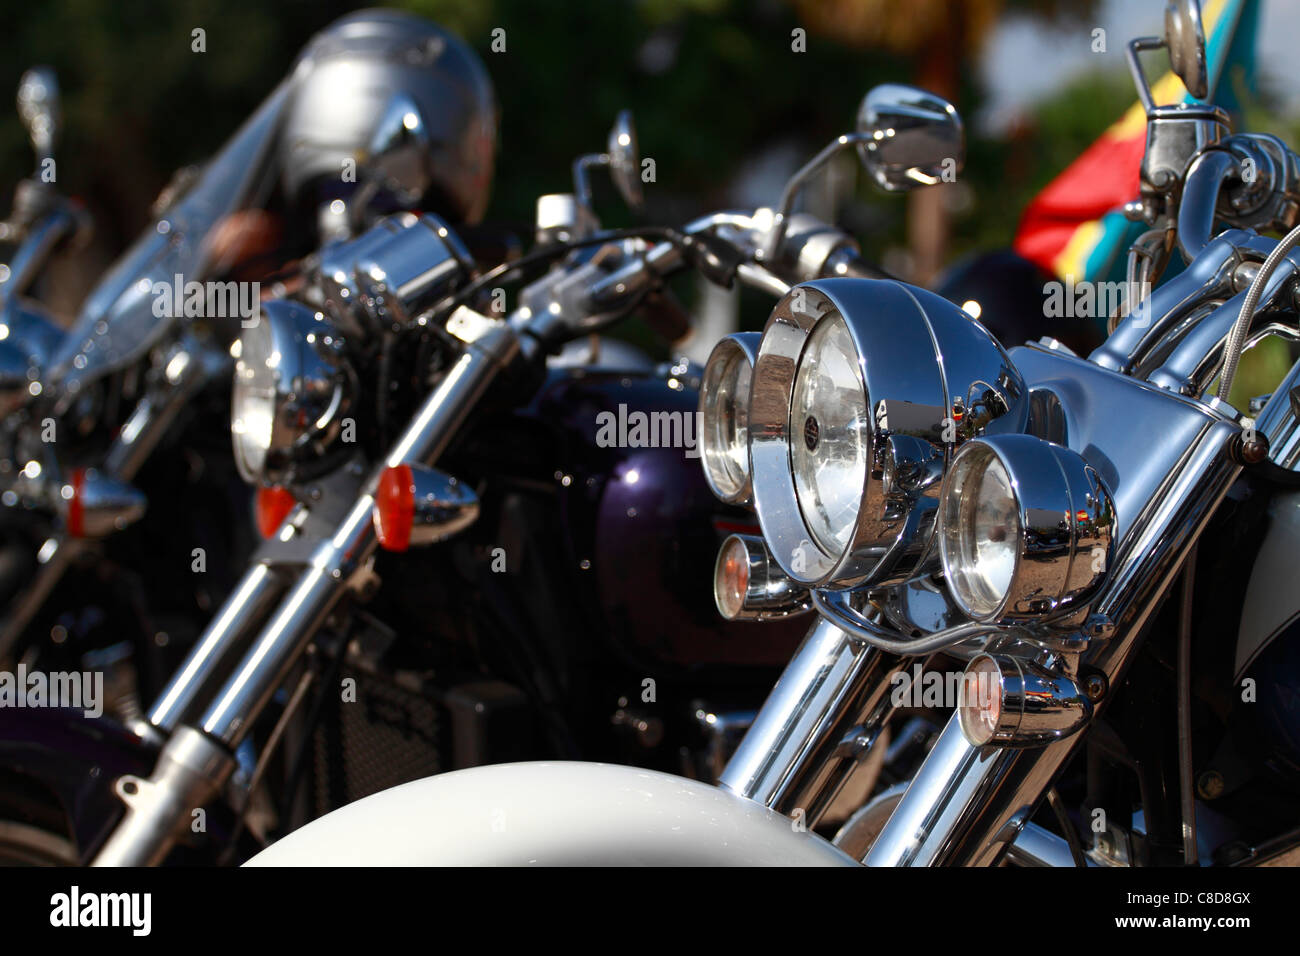 Custom bike, headlight detail Stock Photo